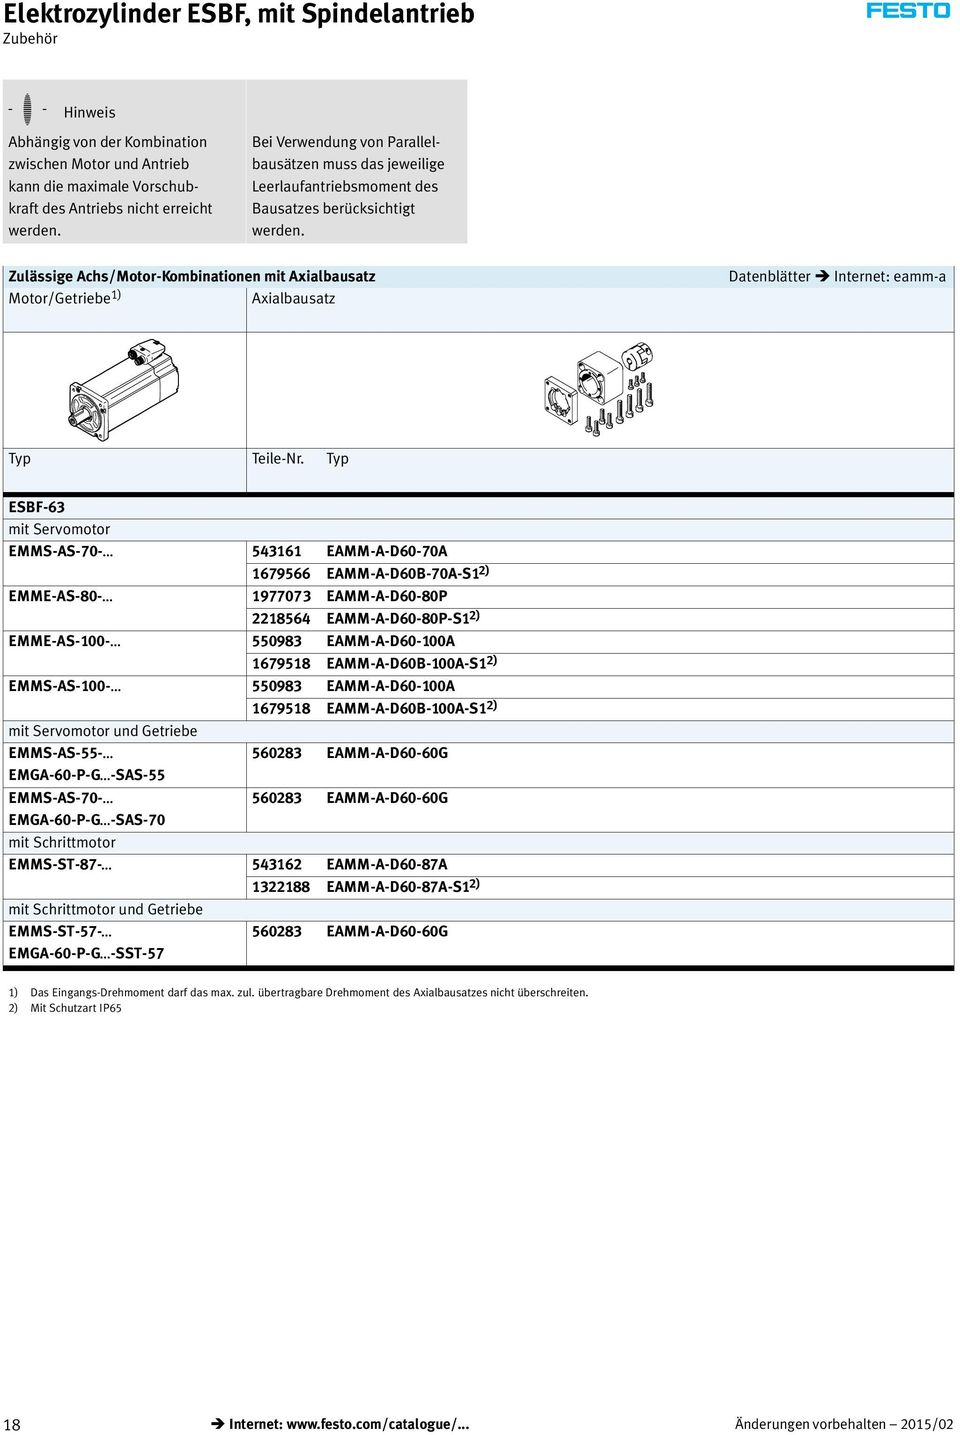 Zulässige Achs/Motor-Kombinationen mit Axialbausatz Motor/Getriebe 1) Axialbausatz Datenblätter Internet: eamm-a Typ Teile-Nr.